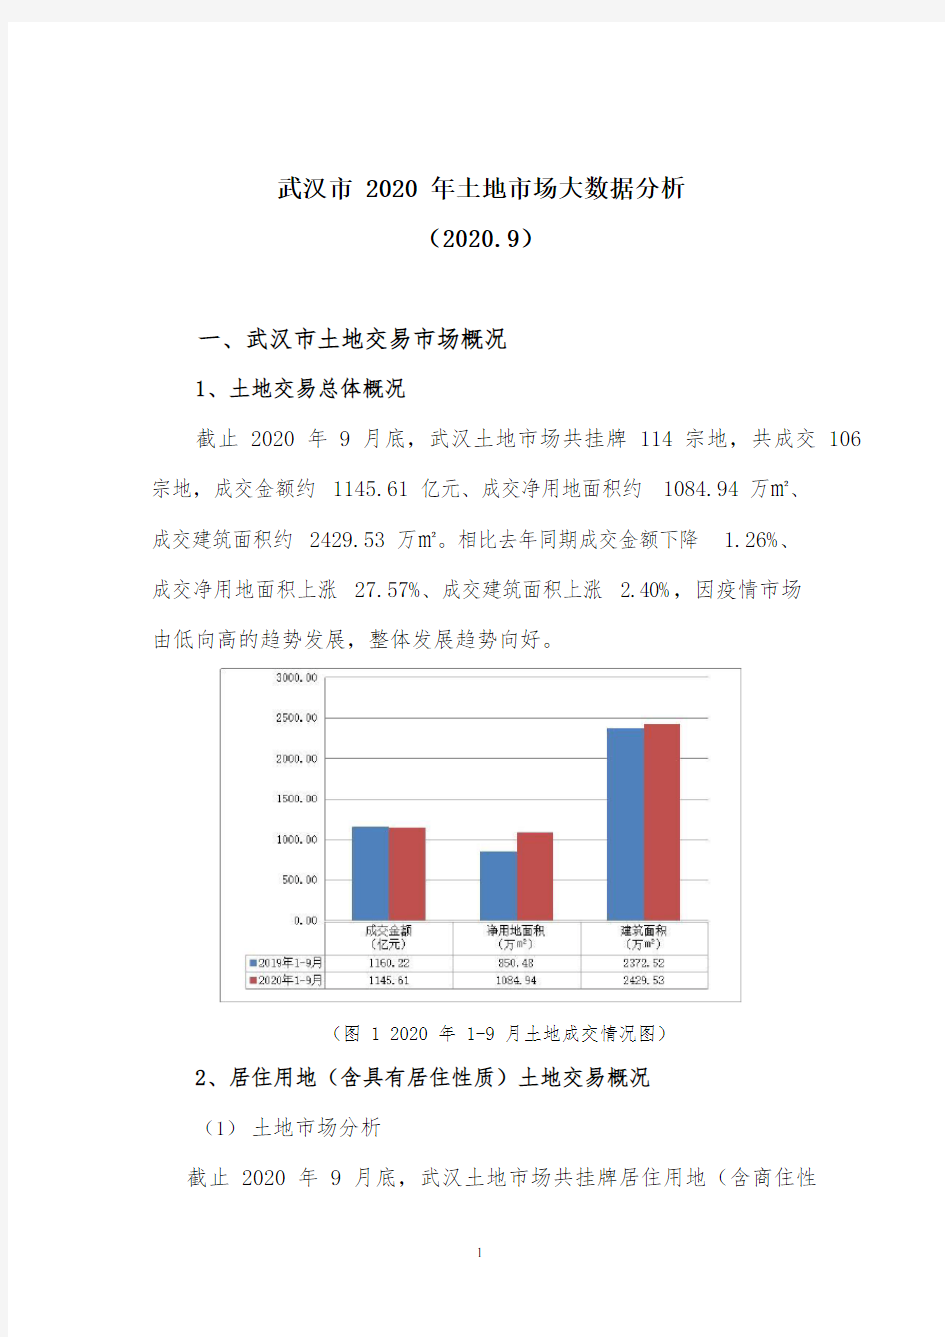 武汉市土地市场2020年大数据分析2020.09(新版)